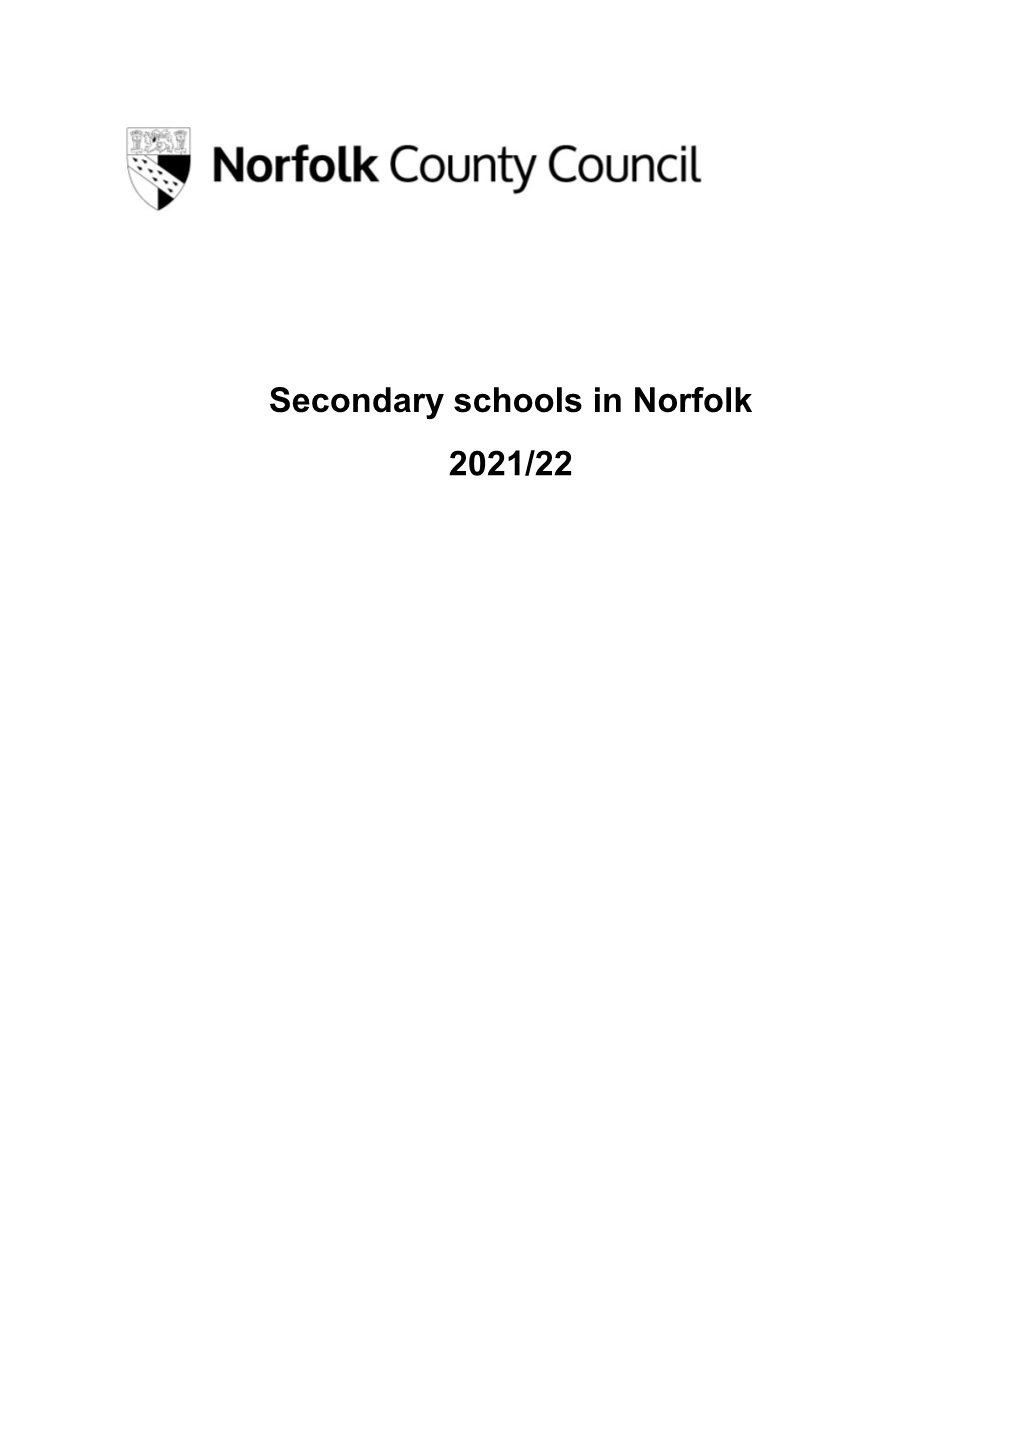 Secondary Schools in Norfolk 2021/22